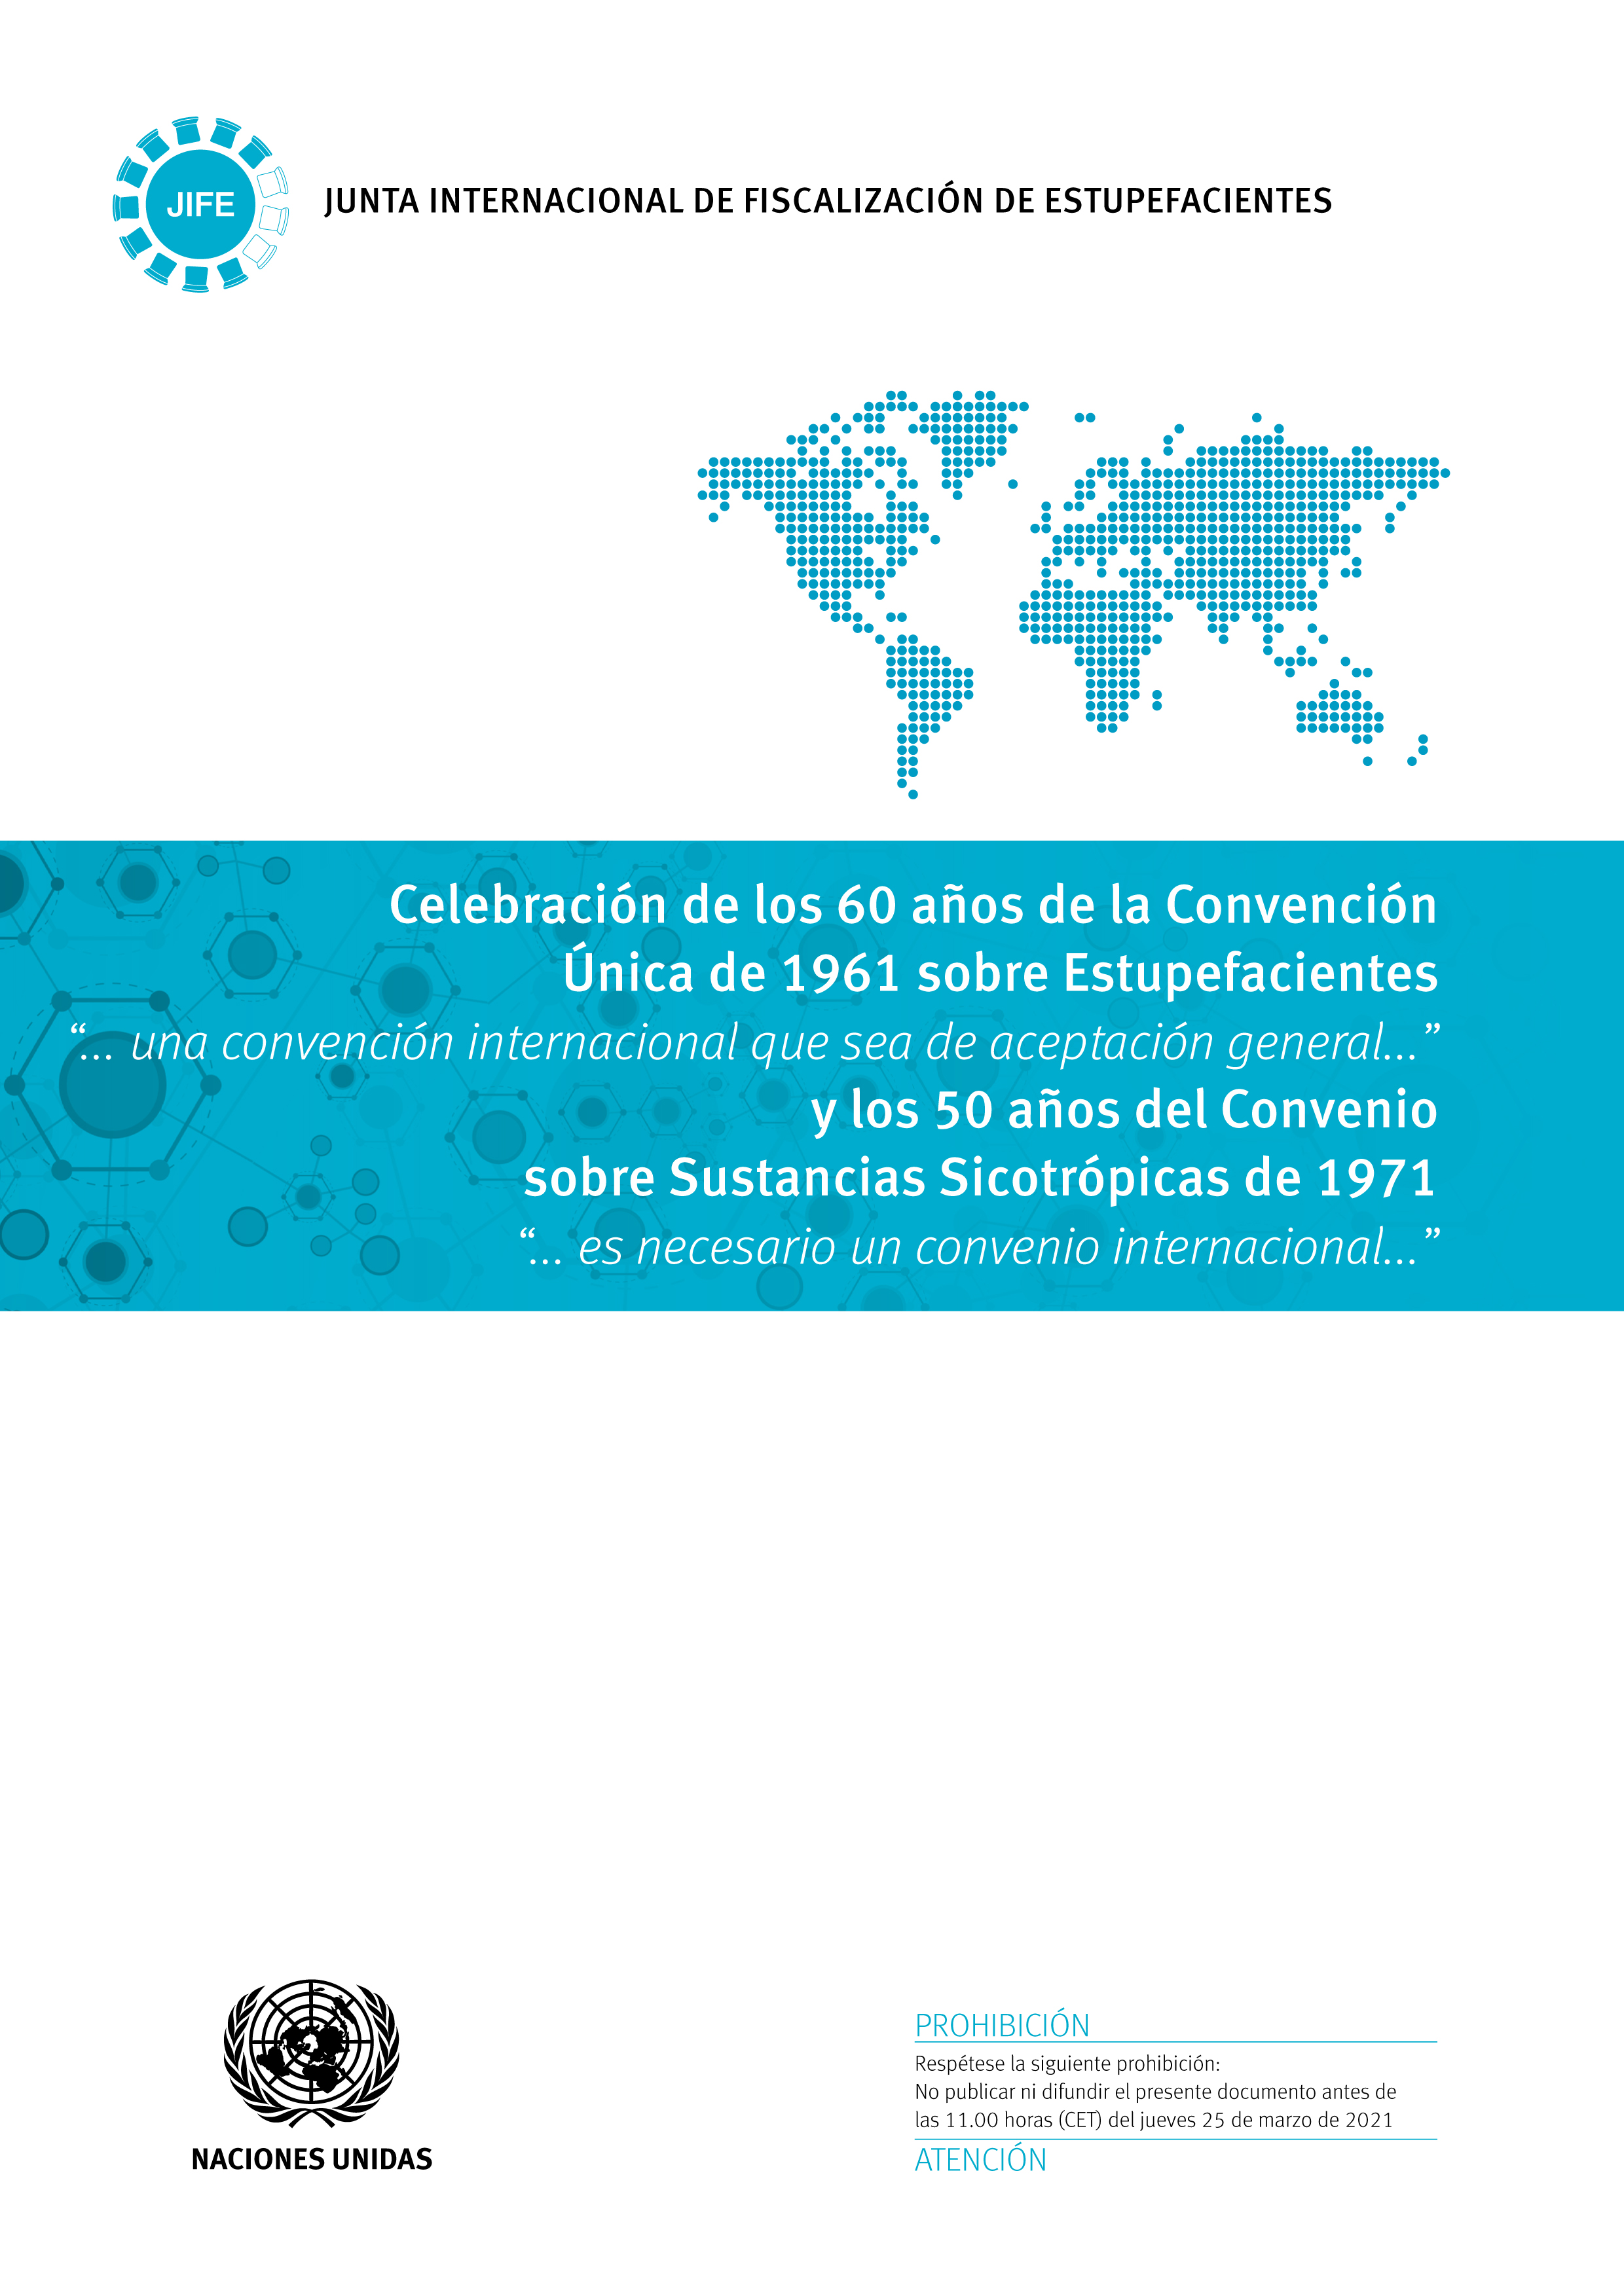 image of Celebración de los 60 años de la Convención Única de 1961 sobre Estupefacientes y los 50 años del Convenio sobre Sustancias Sicotrópicas de 1971